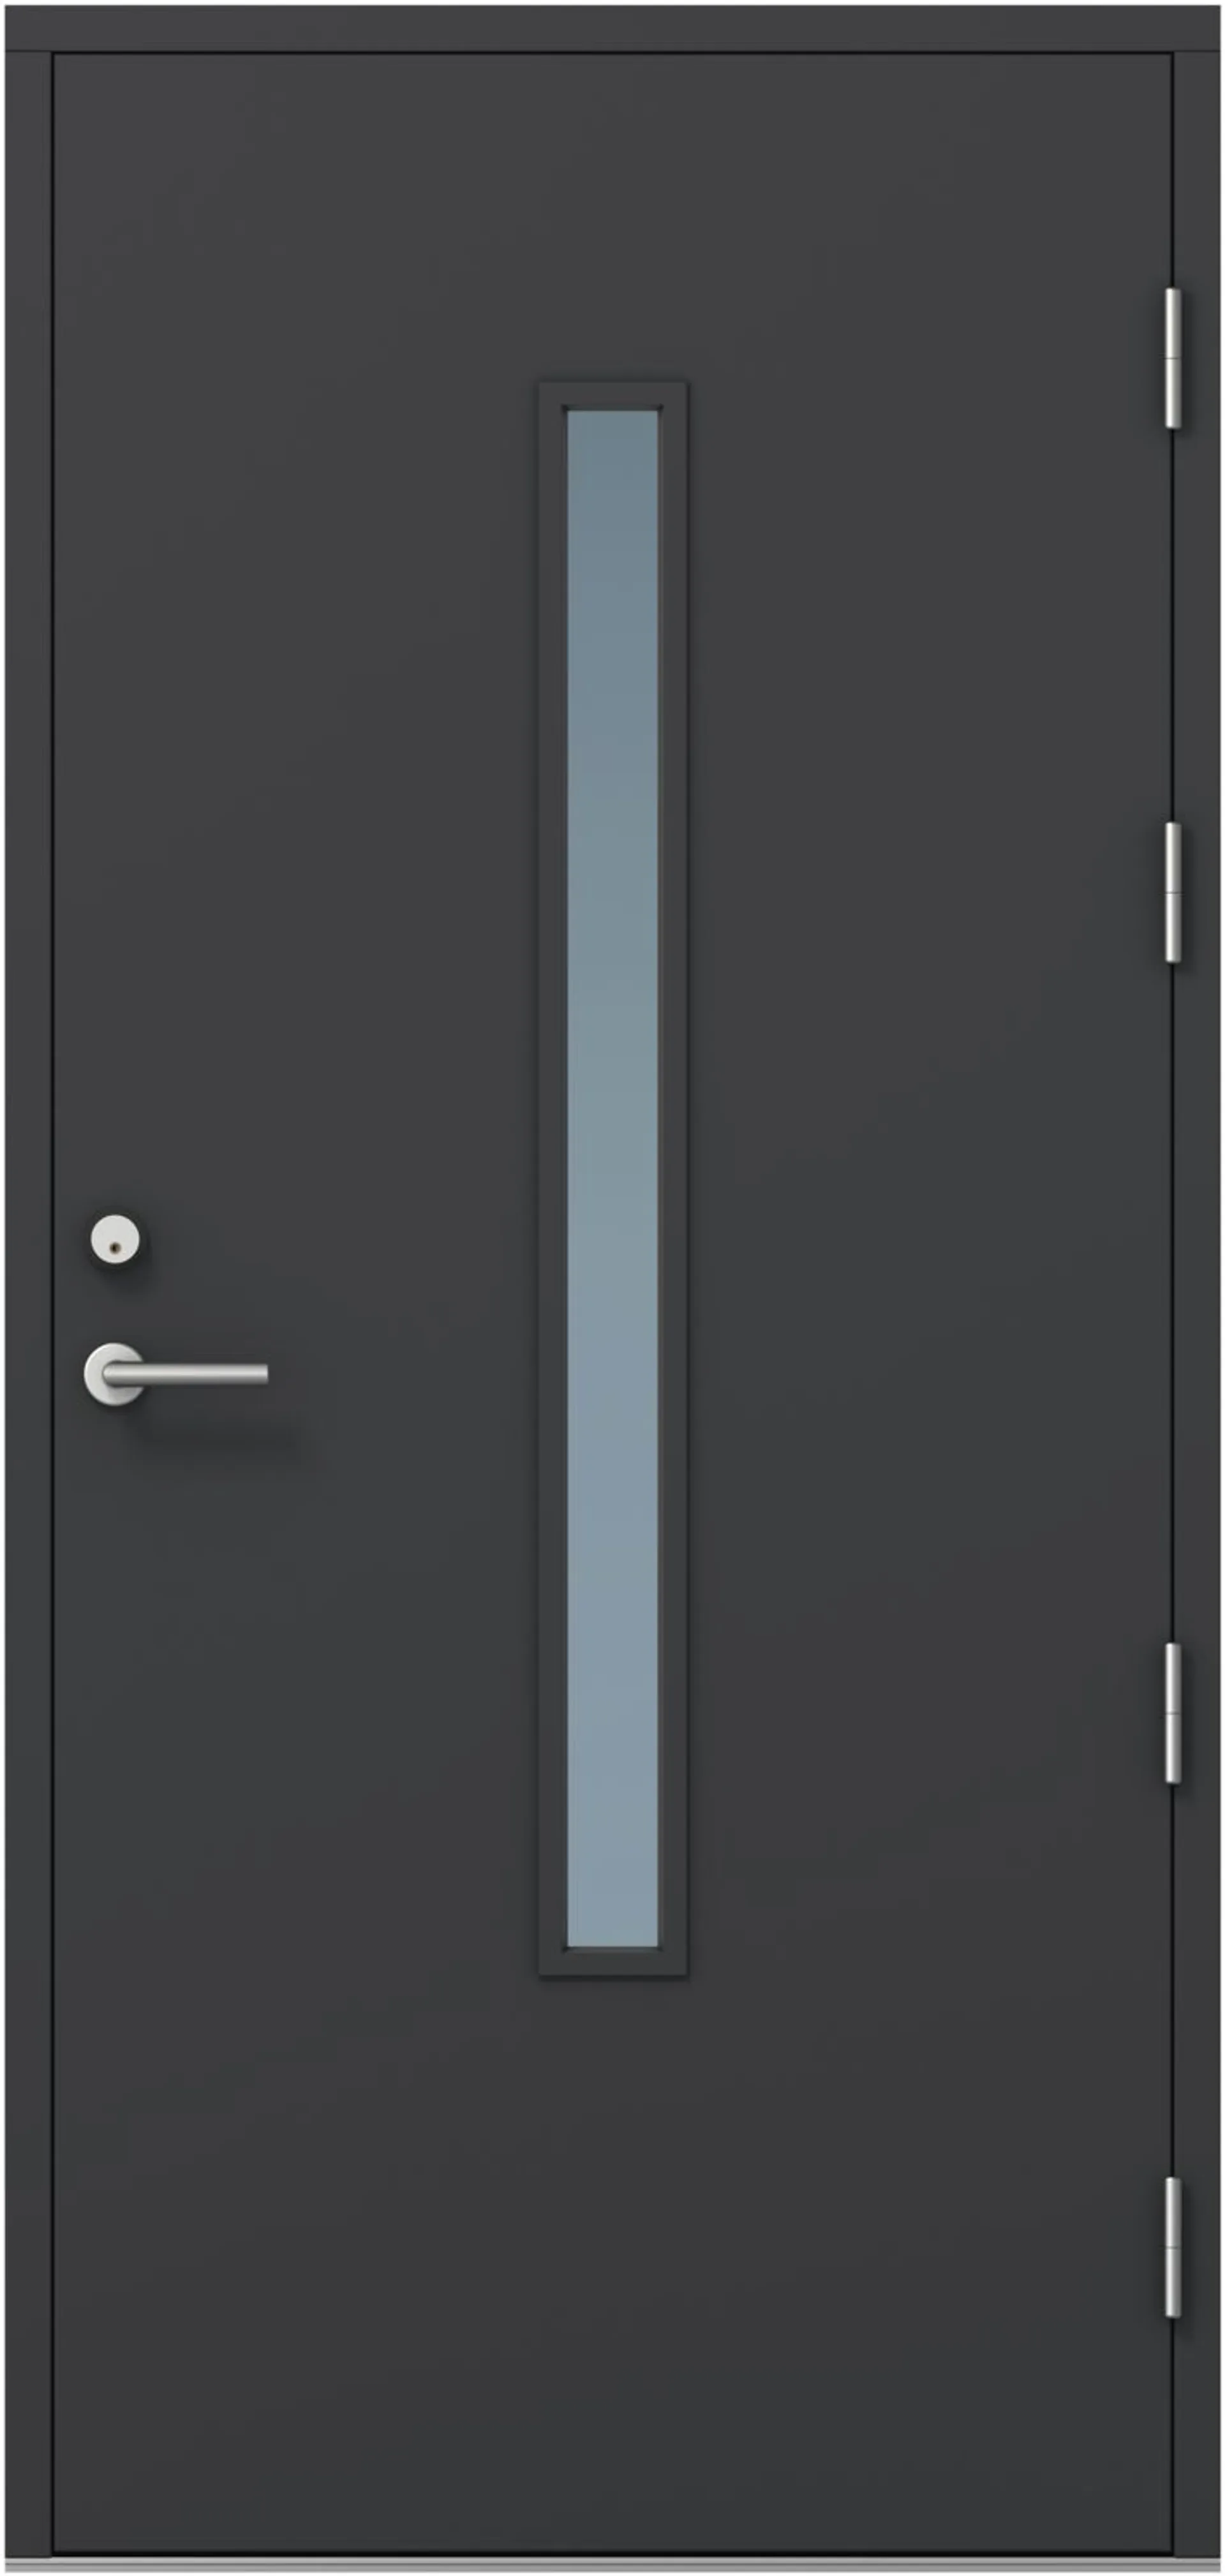 KASKI-ulko-ovi FE-810 pitkällä lasilla, tumman harmaa, 10x21 vasen, kynnys öljytty koivu, karmi 115mm